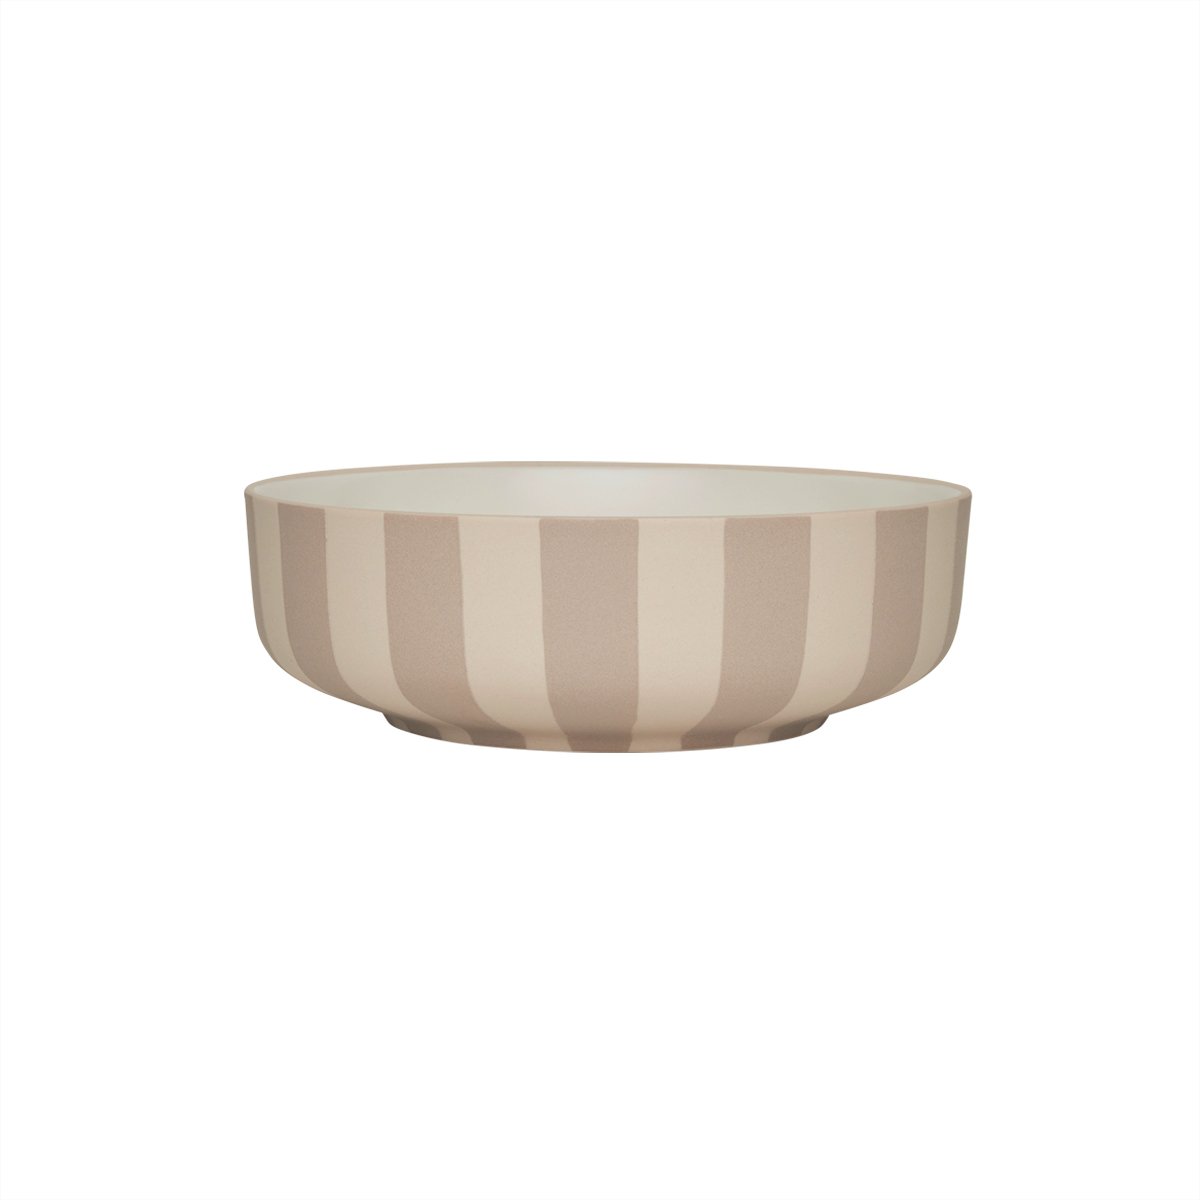 OYOY LIVING - Toppu Bowl Large - Clay (L301189) - Hjemme og kjøkken